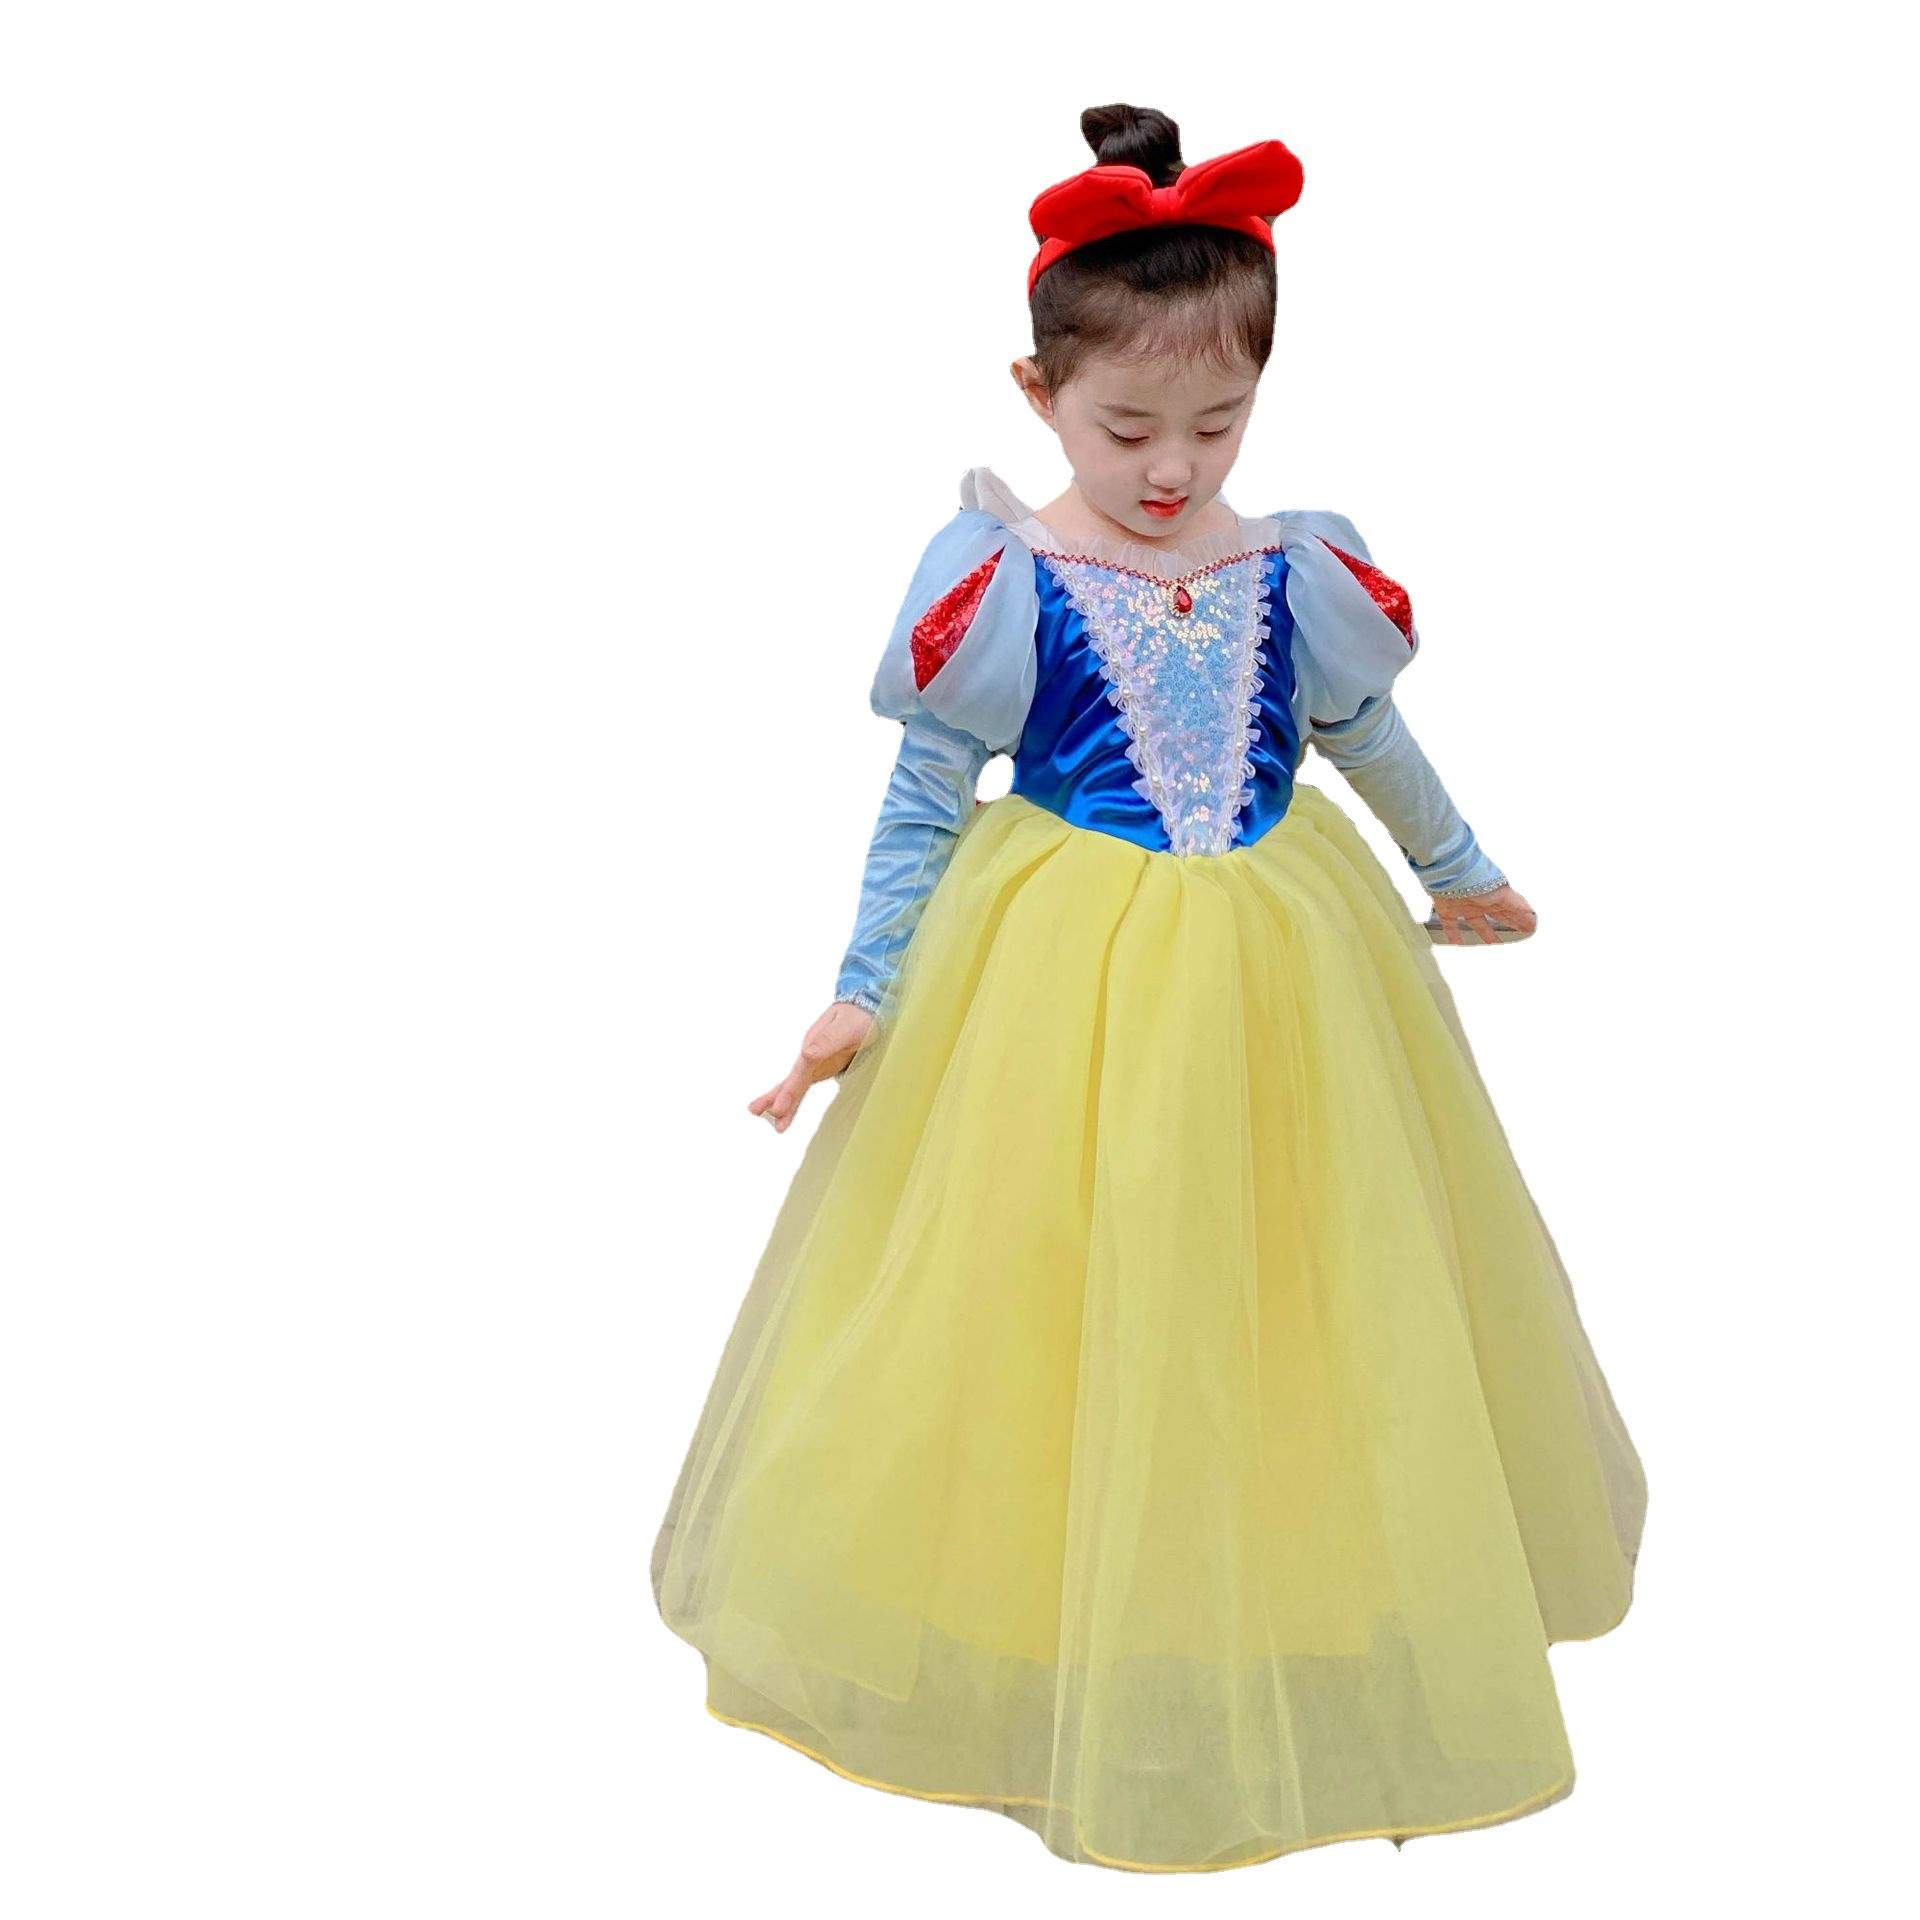 Snow White Adult Costume, Snow White Short Skirt